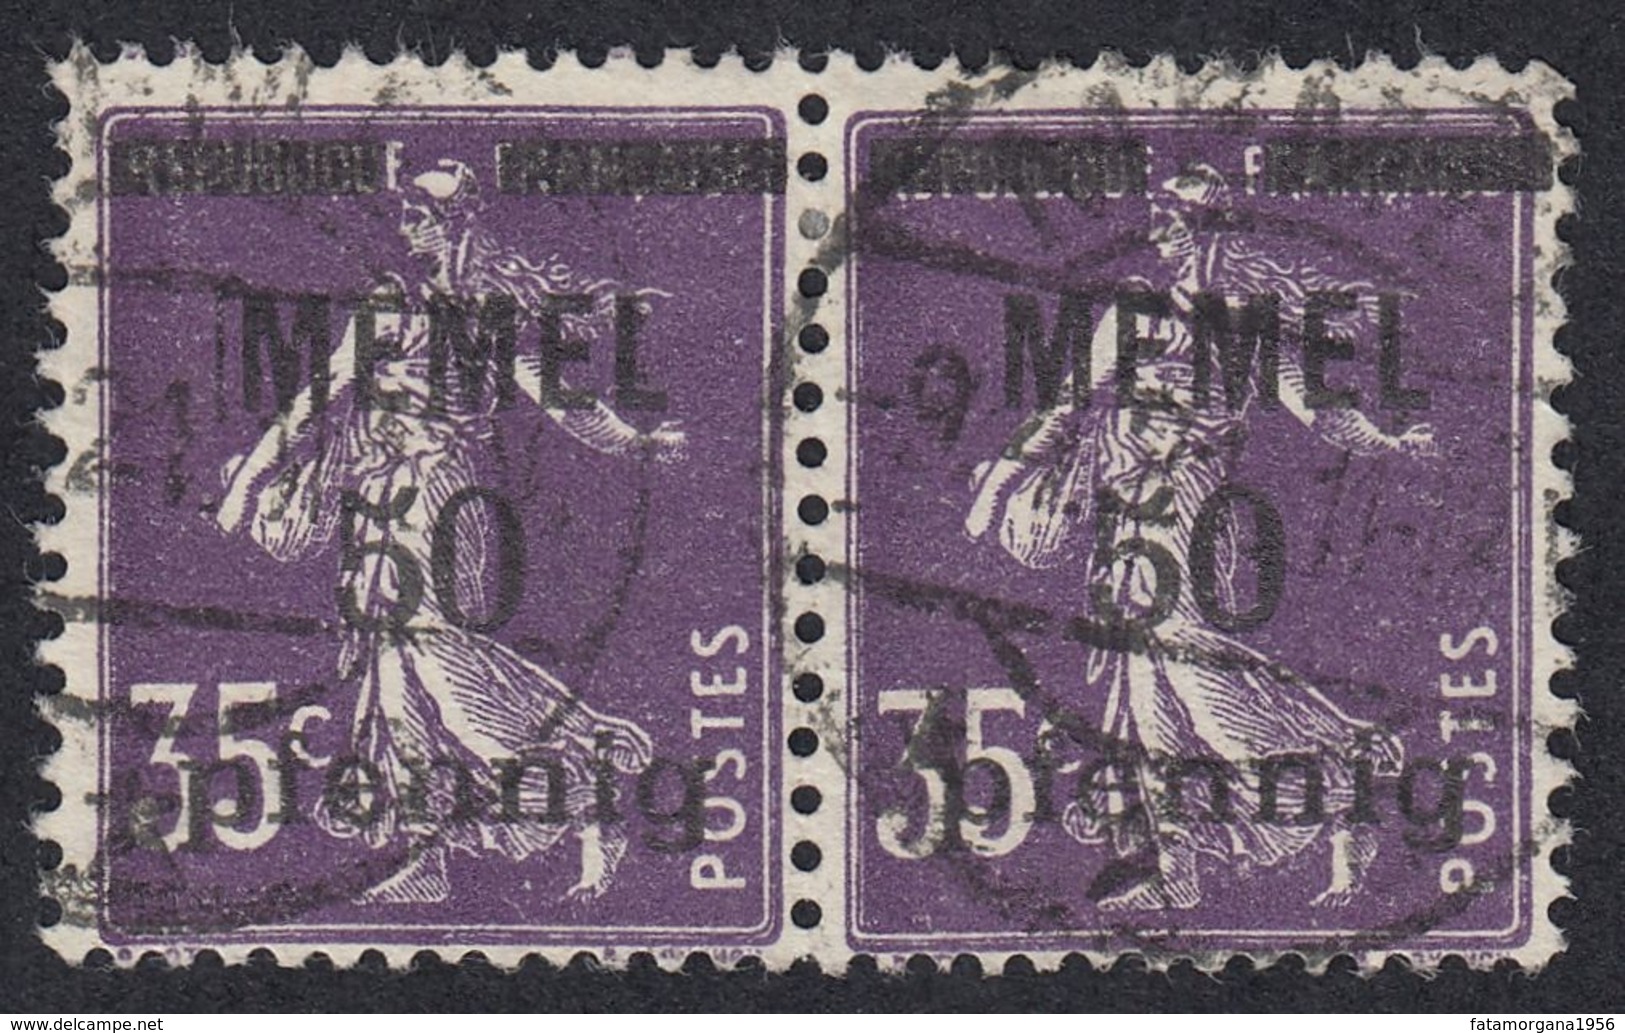 FRANCE Francia Frankreich (colonie) - 1920/1921 - Memel - Yvert 23, Due Francobolli Uniti, Obliterati - Gebraucht